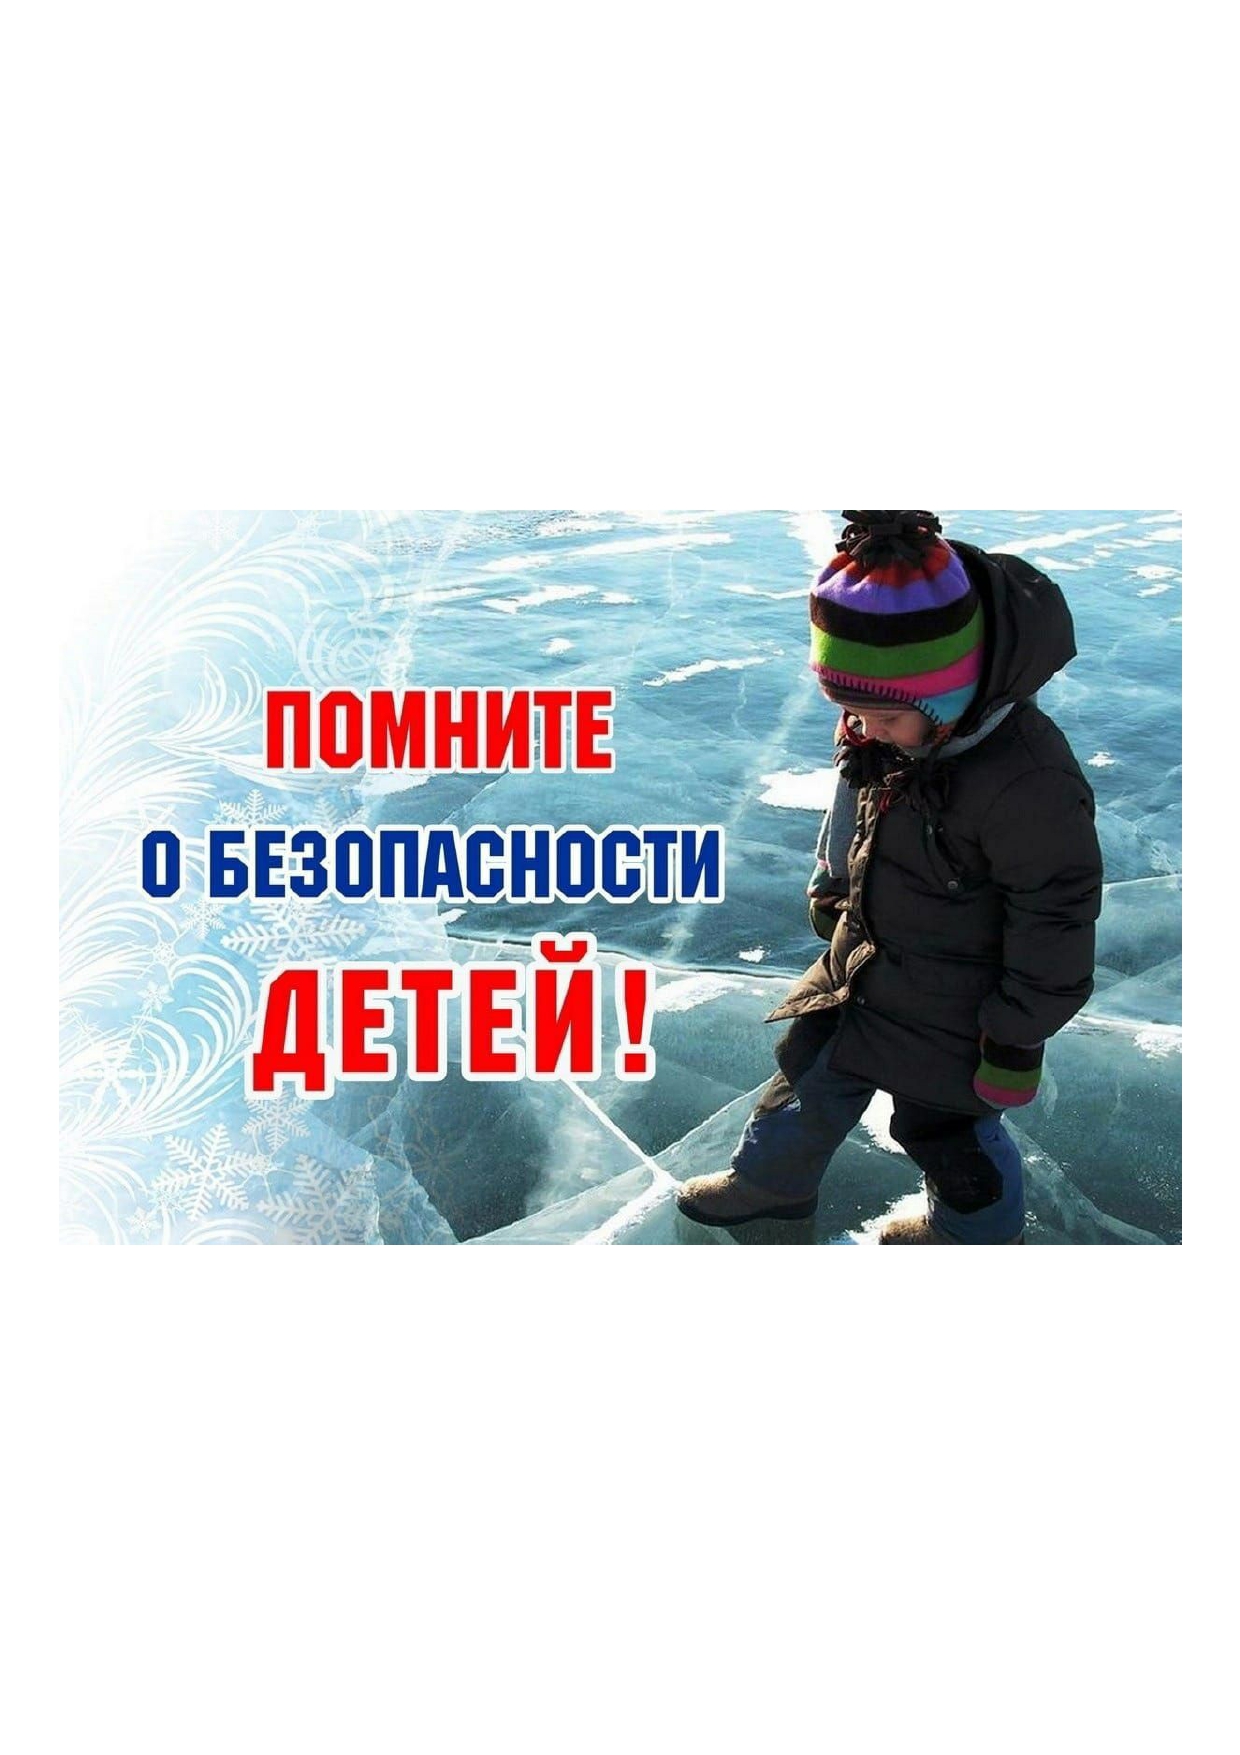 Безопасность на льду!.